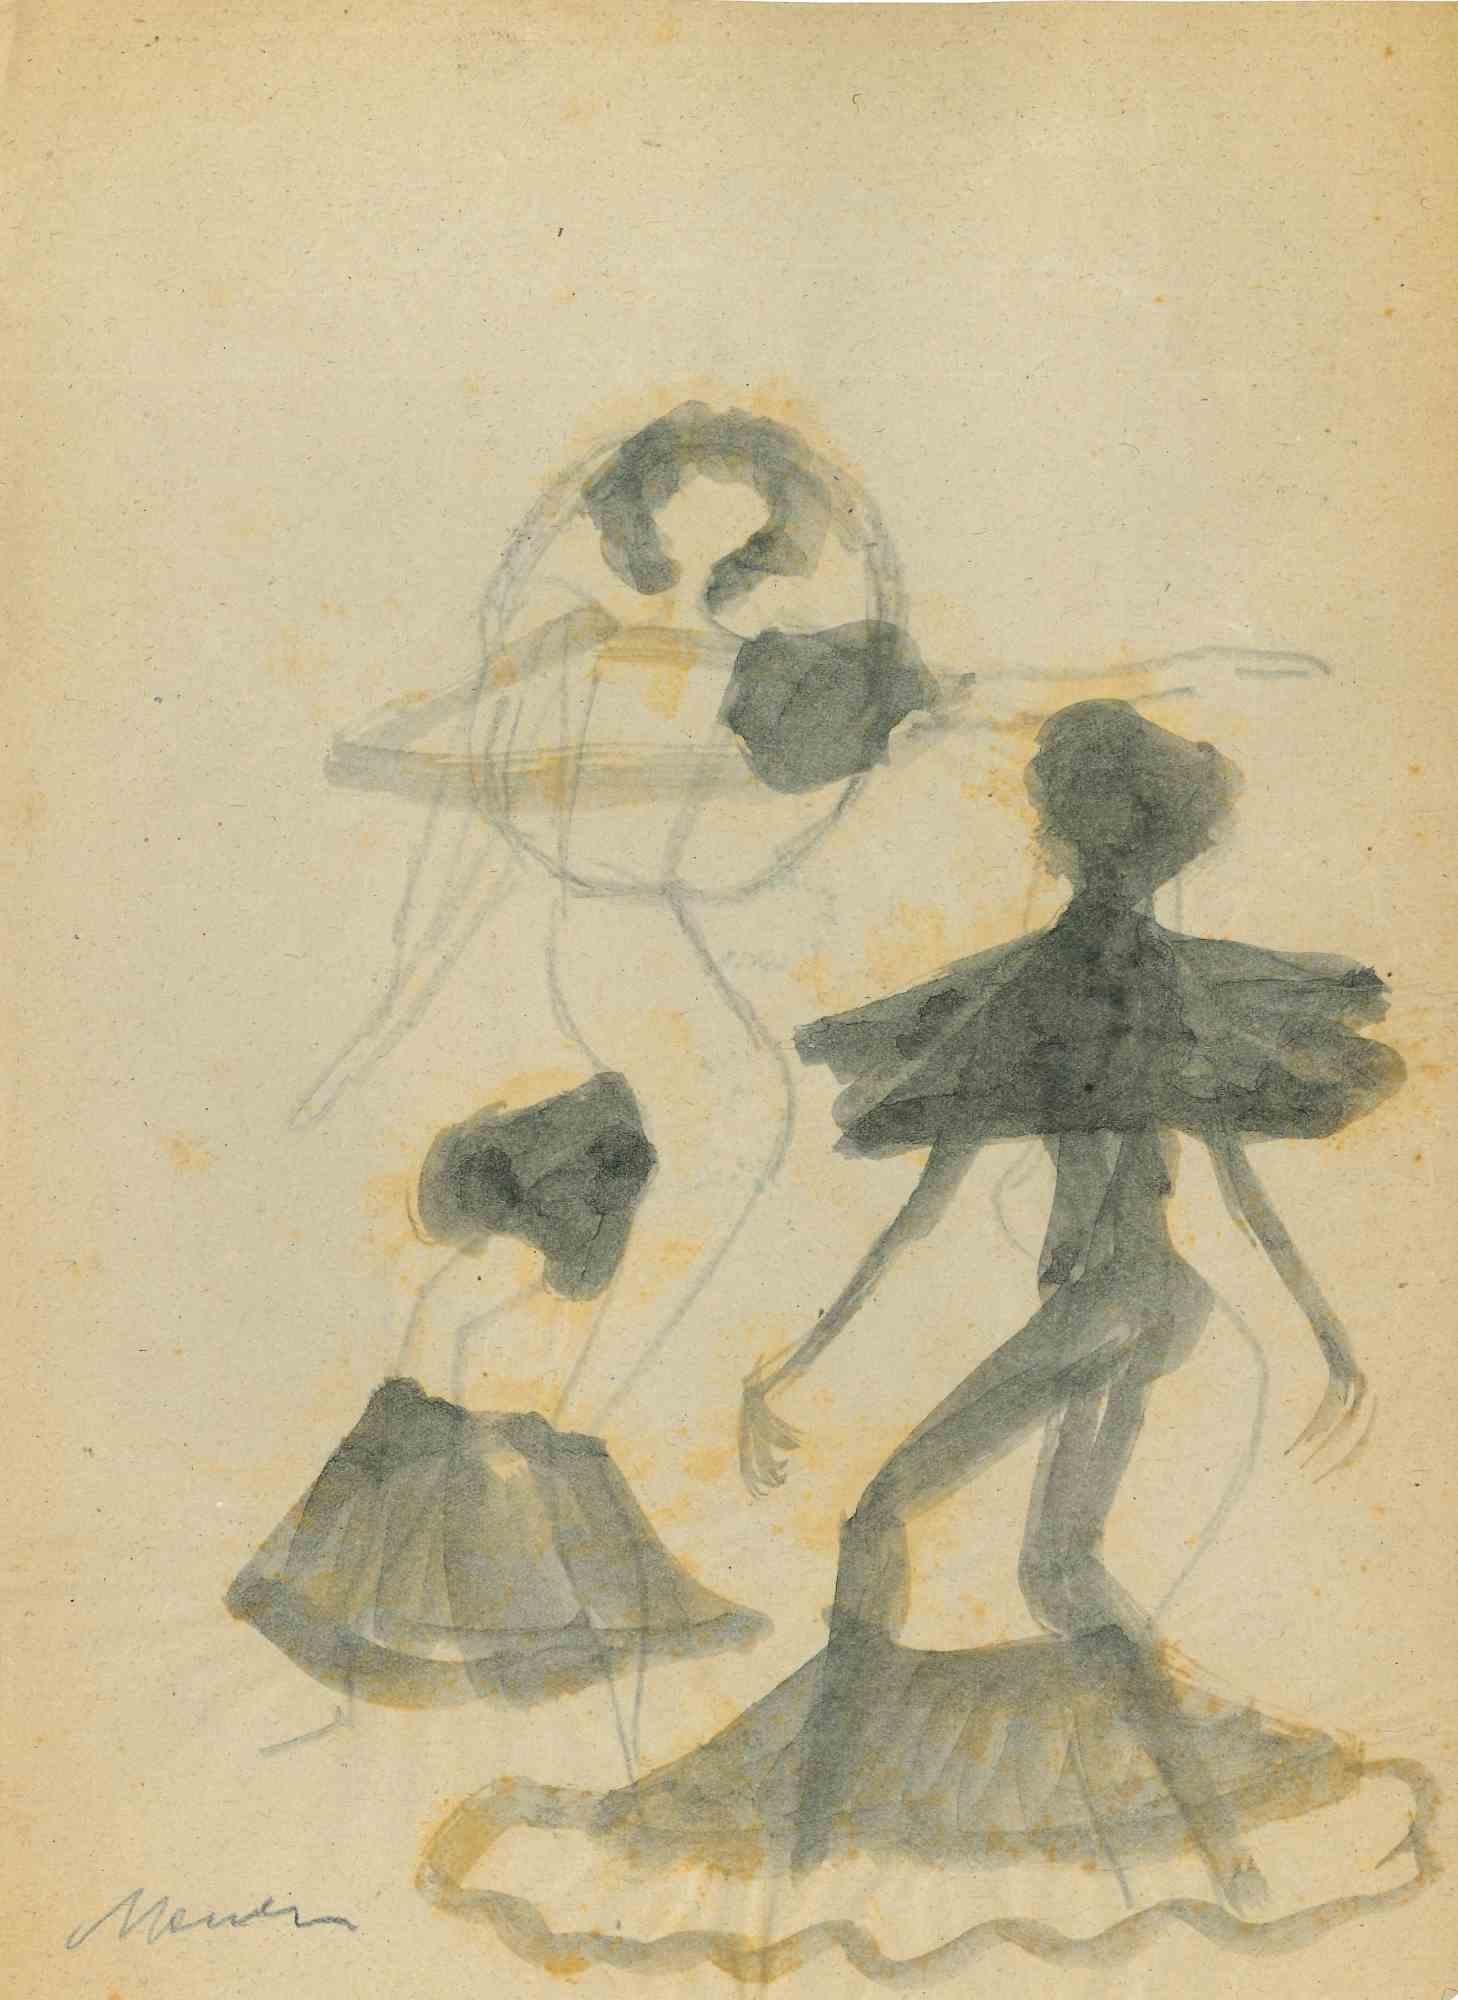 Tänzerinnen ist eine Aquarellzeichnung von Mino Maccari (1924-1989) aus der Mitte des 20. Jahrhunderts.

Handsigniert.

Guter Zustand mit leichten Stockflecken.

Mino Maccari (Siena, 1924-Rom, 16. Juni 1989) war ein italienischer Schriftsteller,